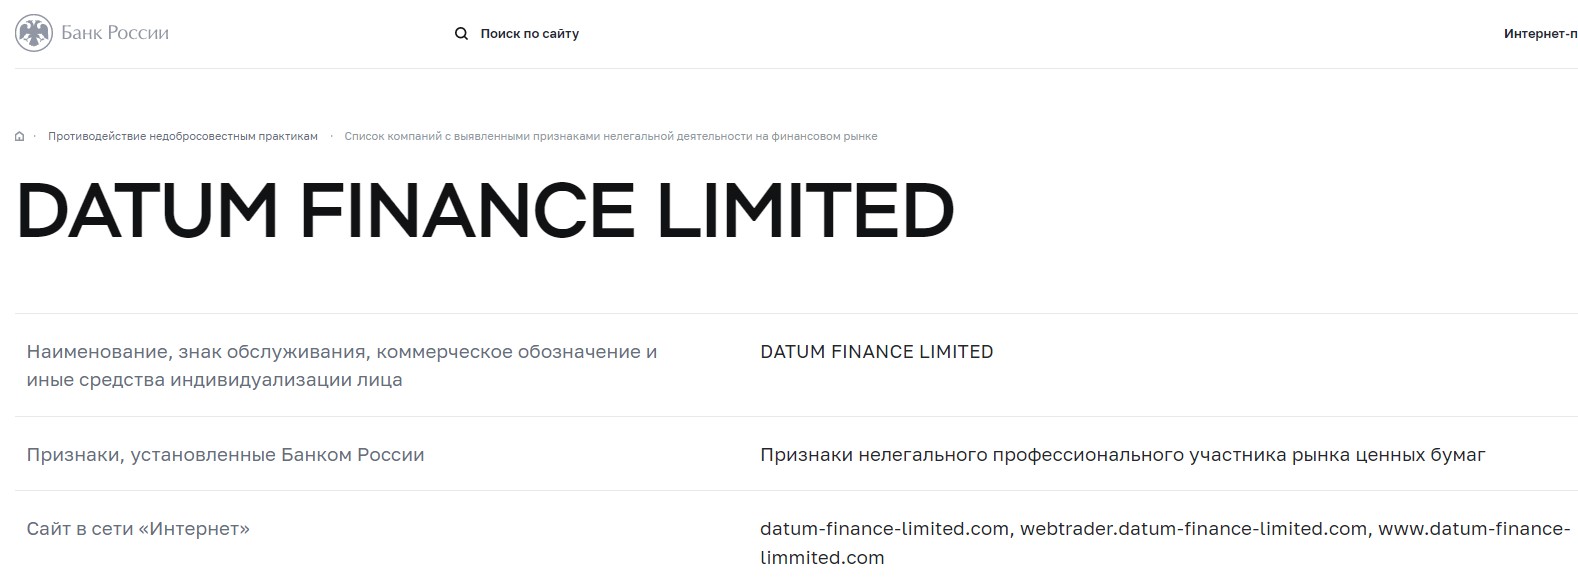 Datum Finance Limited — еще один горе-брокер, созданный умелыми манипуляторами